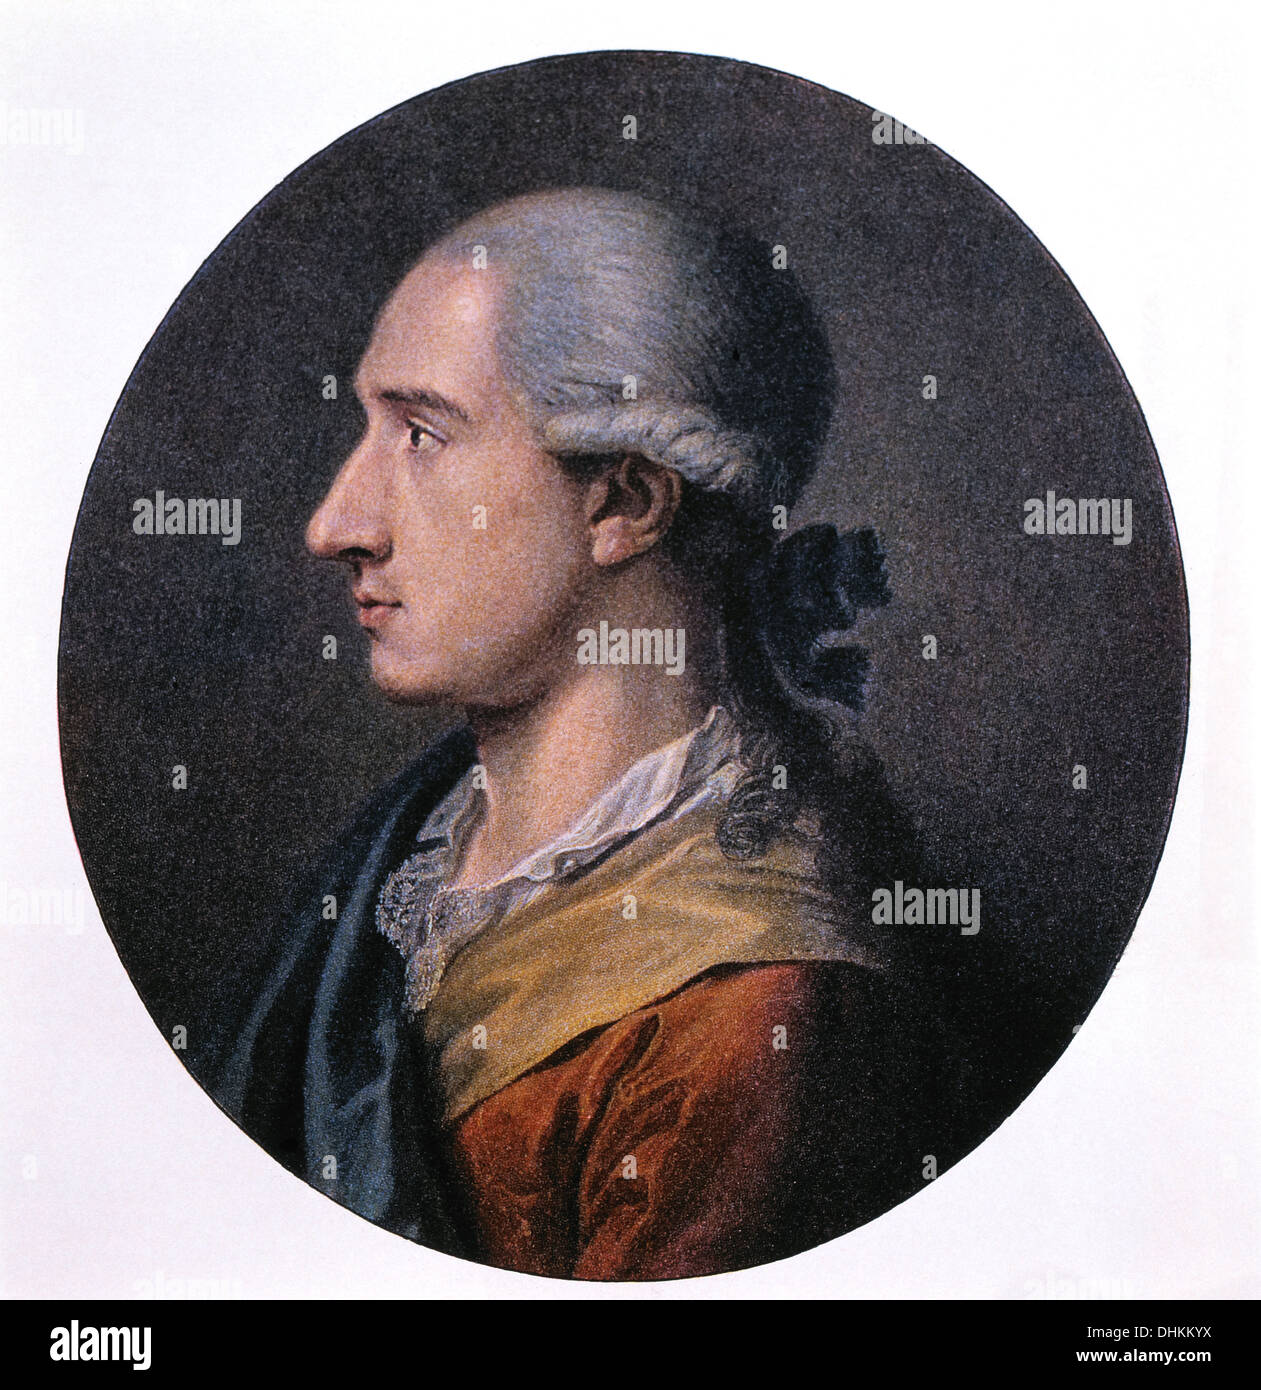 Johann Wolfgang von Goethe (Francoforte sul Meno 1749 - Weimar 1832), poeta tedesco, drammaturgo, romanziere e scienziato, Ritratto, 1773 Foto Stock